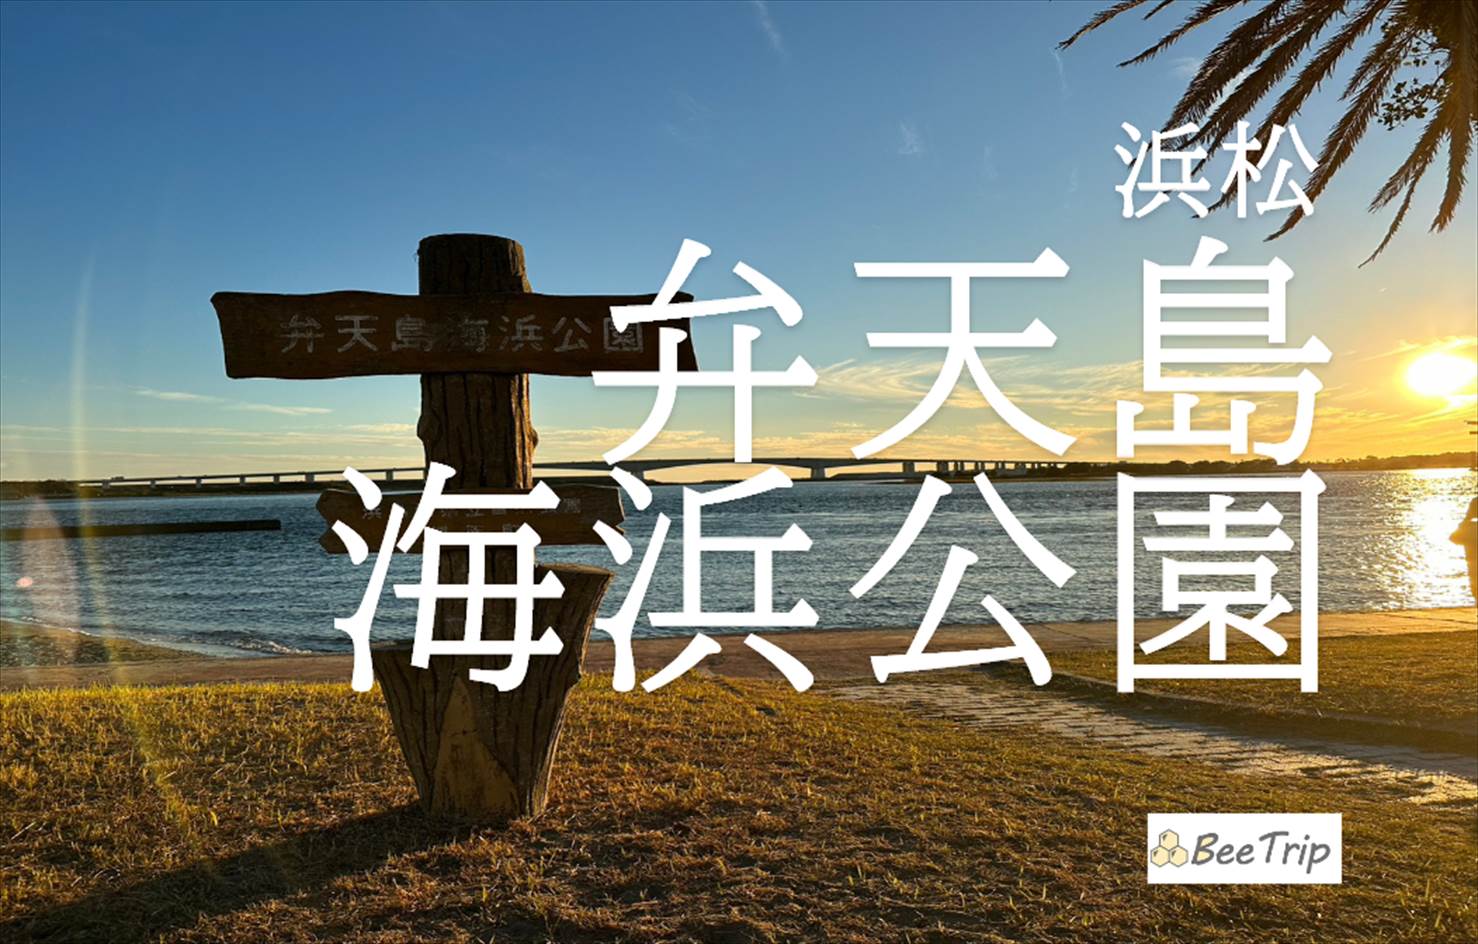 浜松 弁天島海浜公園で夕日と鳥居の神秘的なコラボを楽しむ！行き方や魅力をレポ